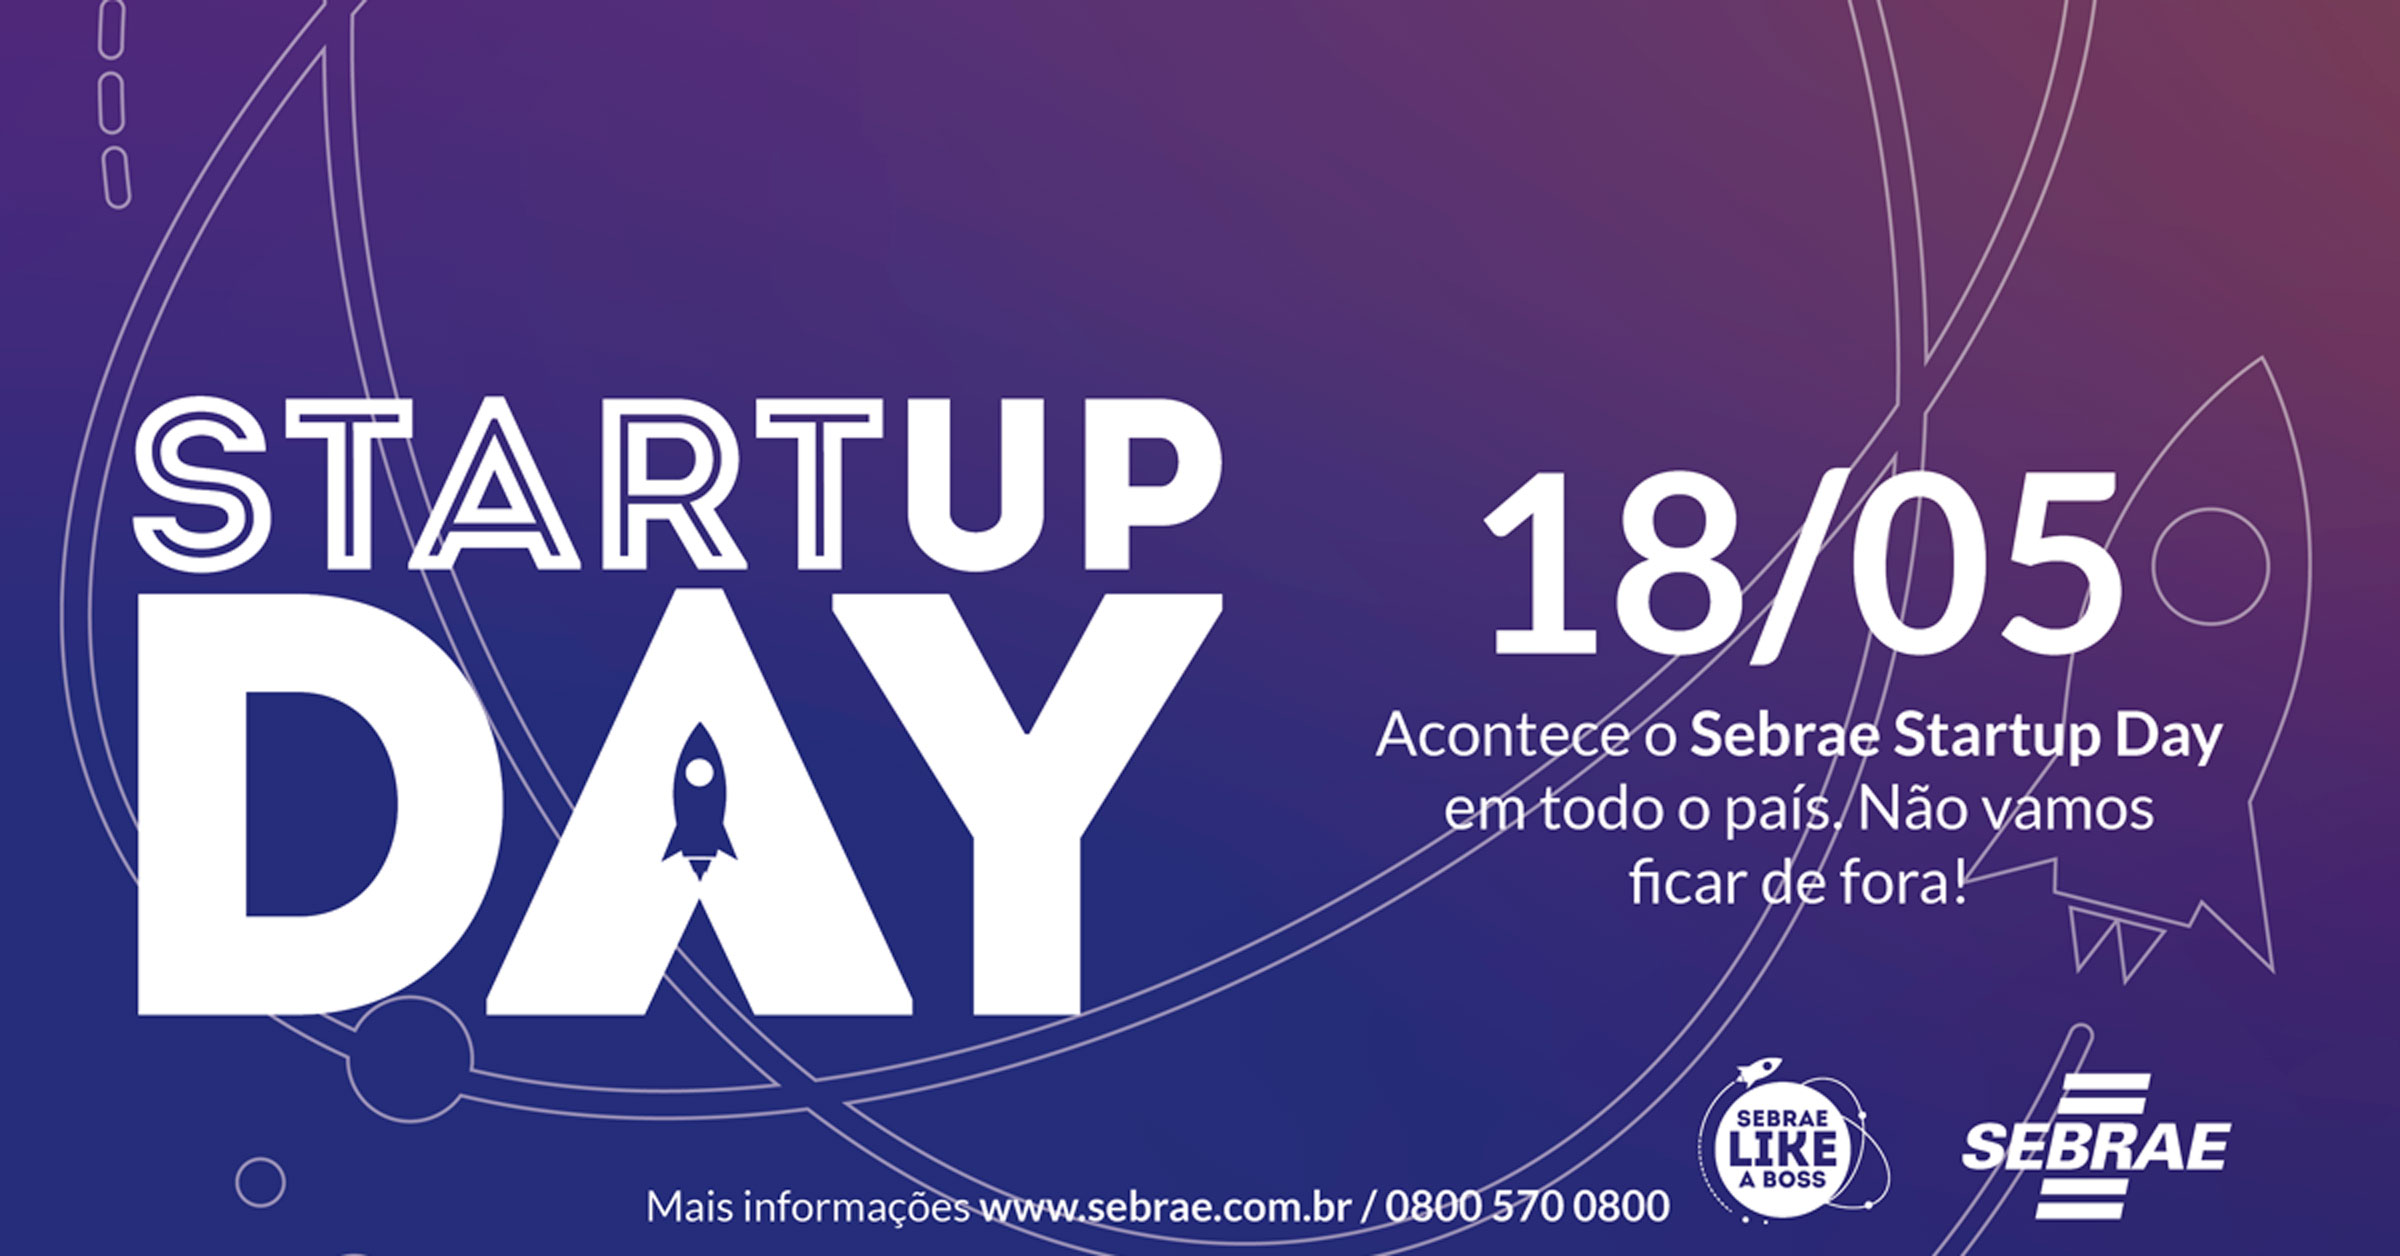 Inova Metrópole participa do Startup Day 2019 que será realizado em maio